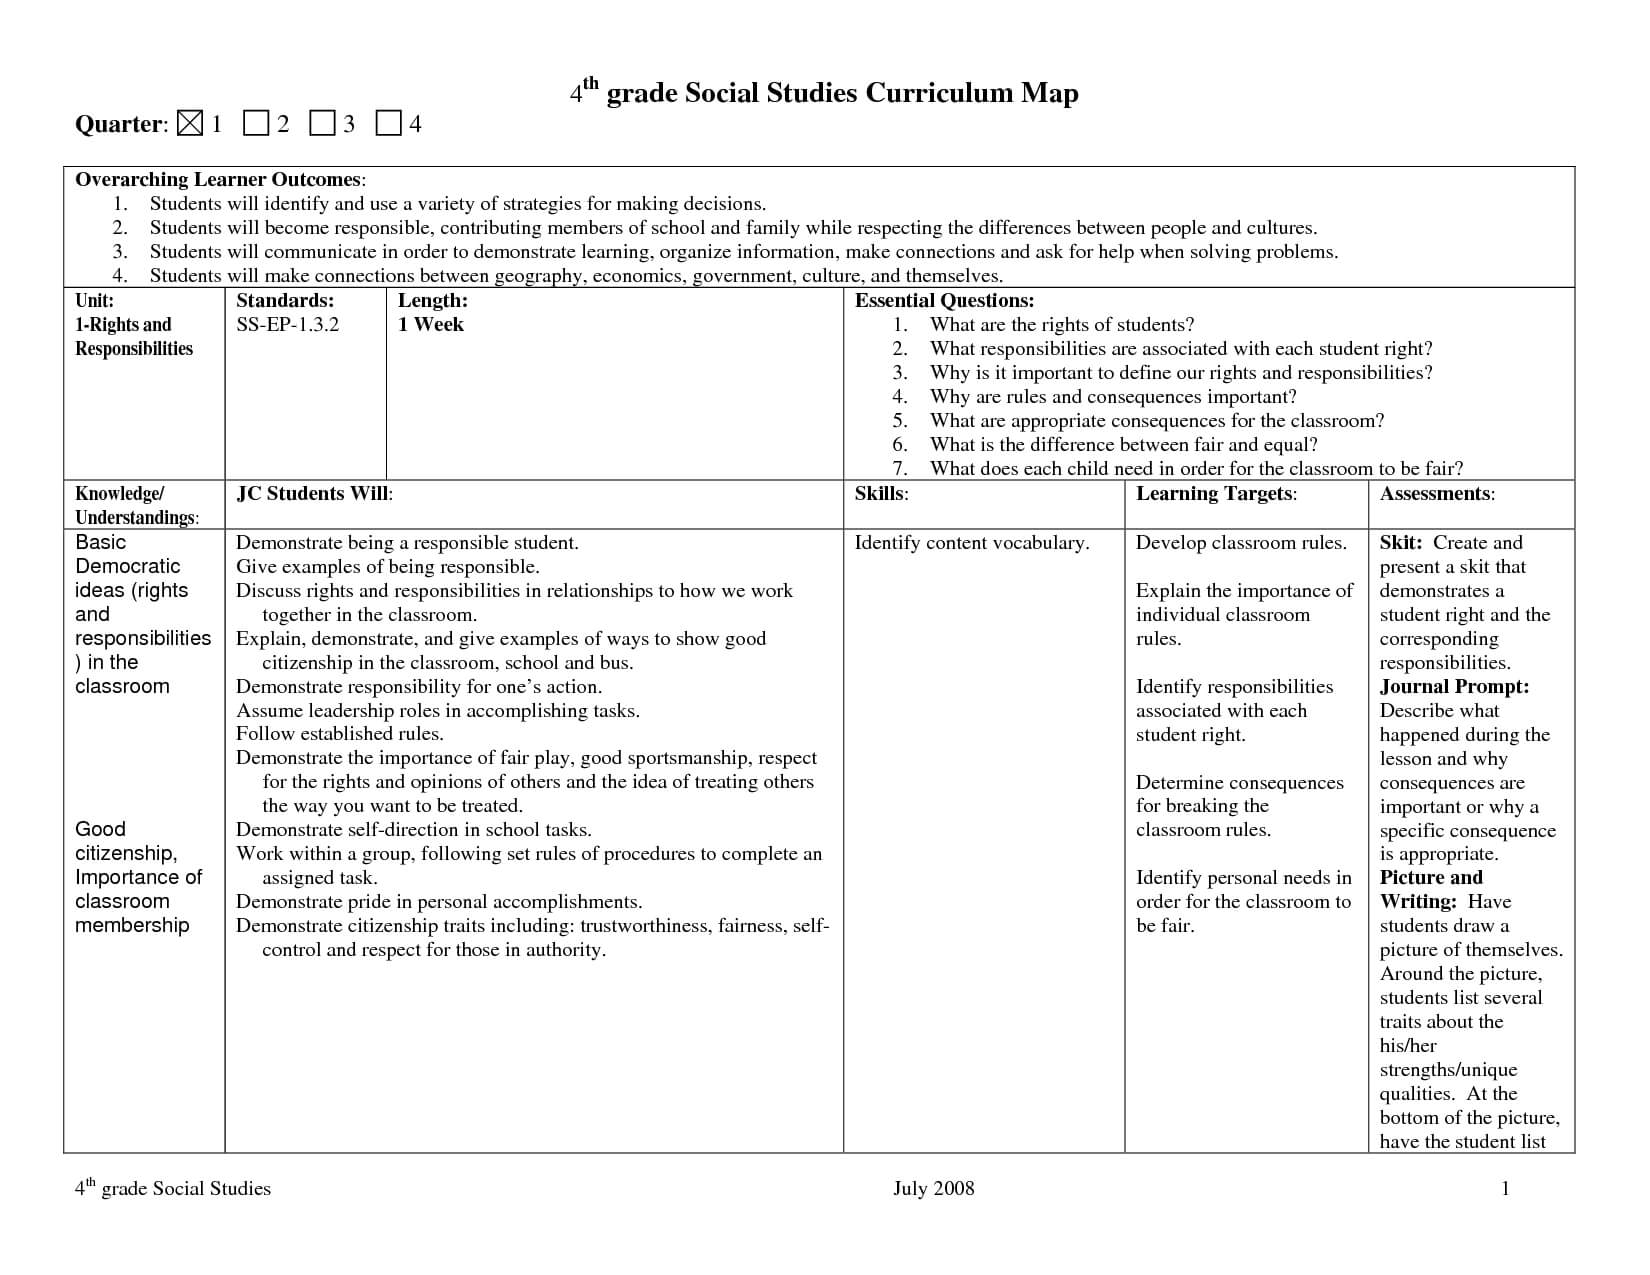 Pinlesa Deel On Classroom | Curriculum Mapping Inside Blank Curriculum Map Template